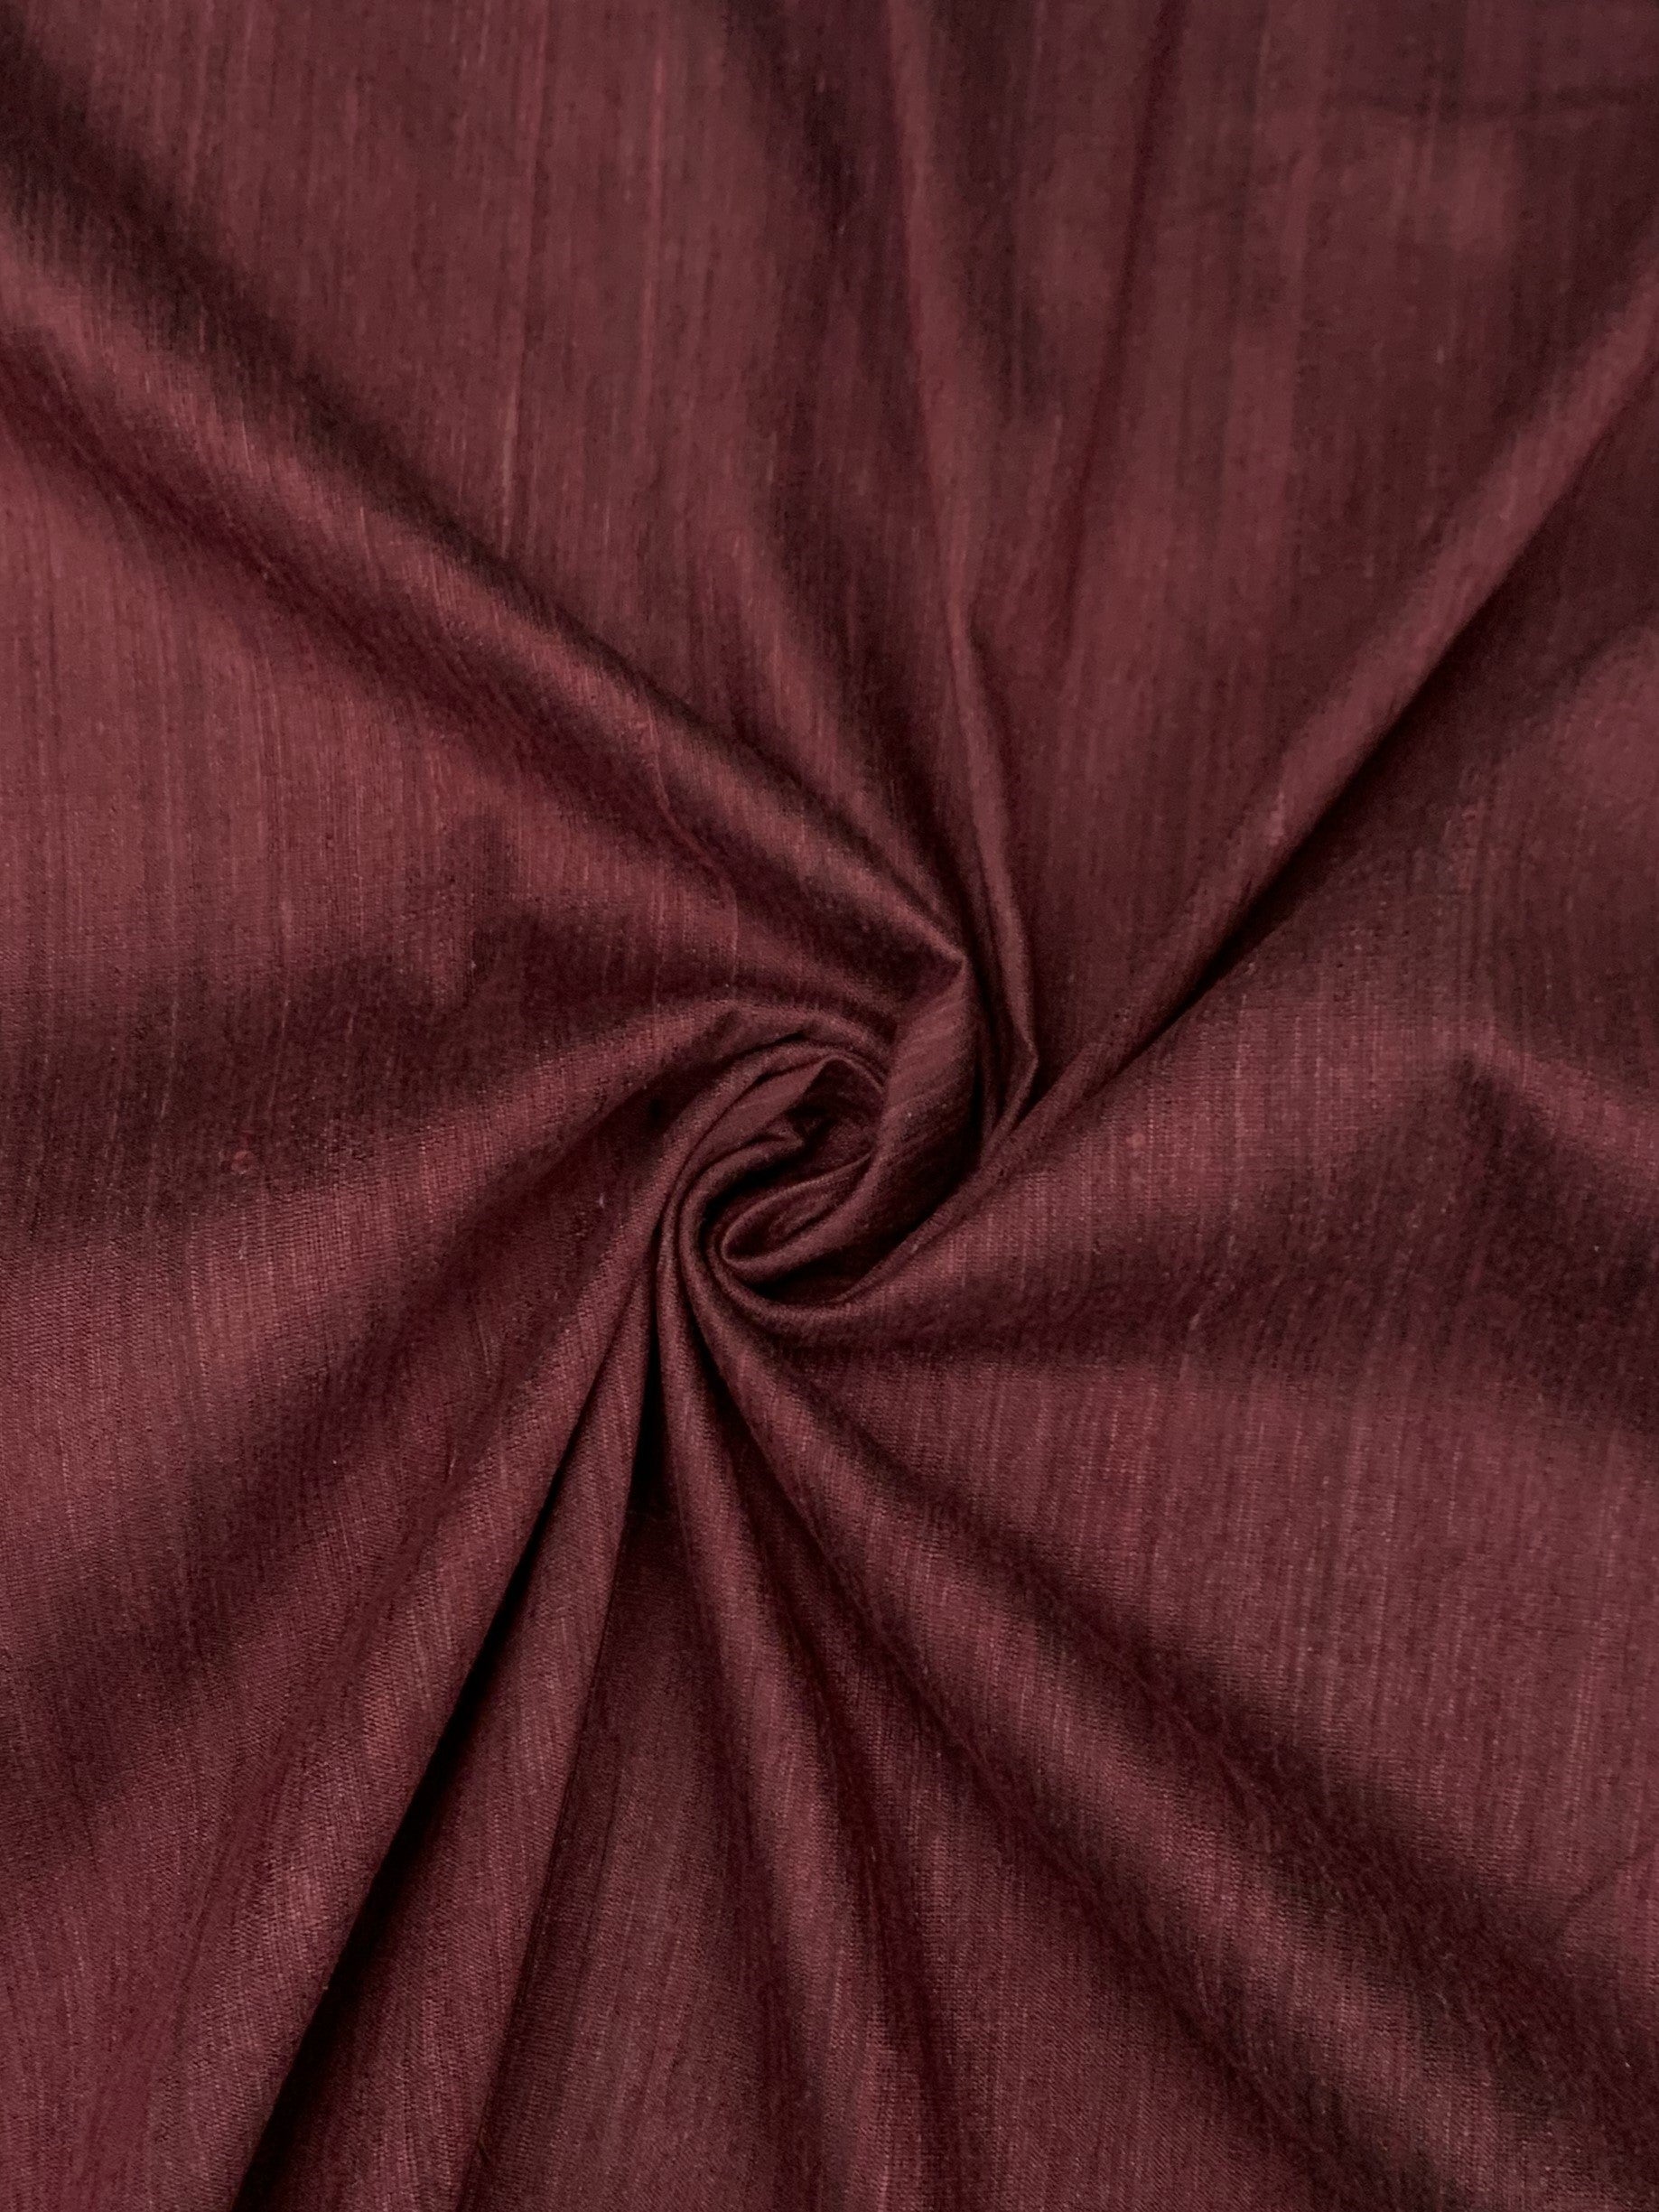 silk dupioni  fabric in wine in a spiral 